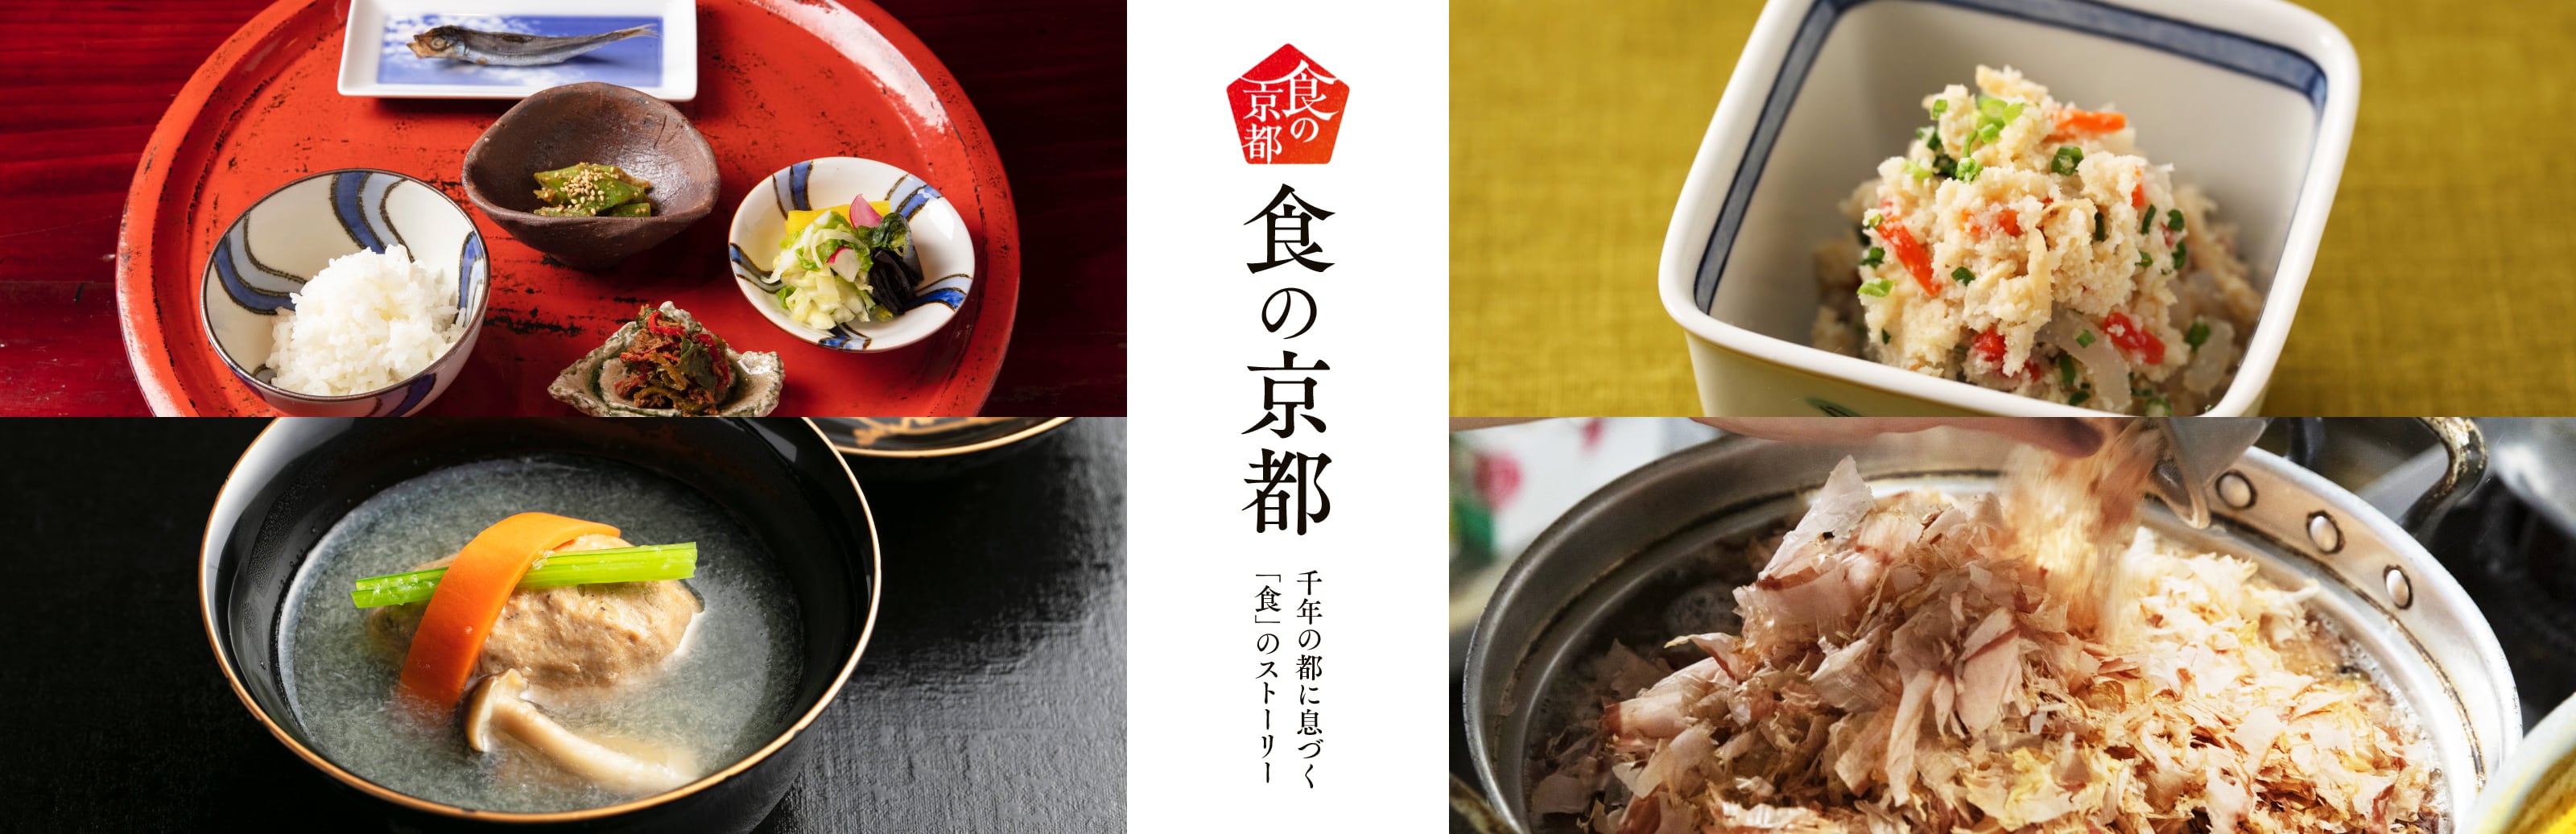 食の京都 〜千年の都に息づく「食」のストーリー〜